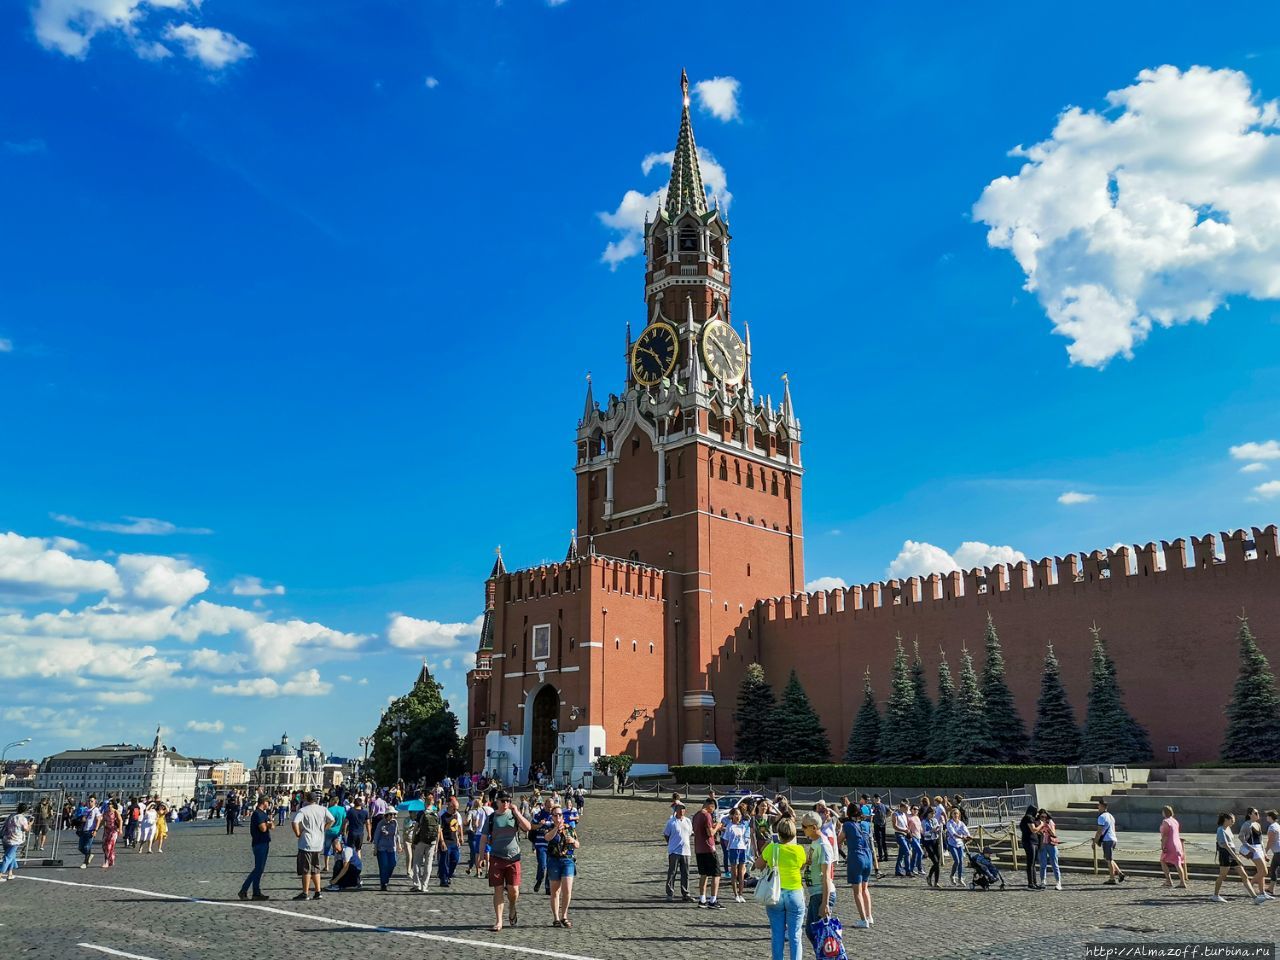 Свидание на Красной Площади Москва, Россия